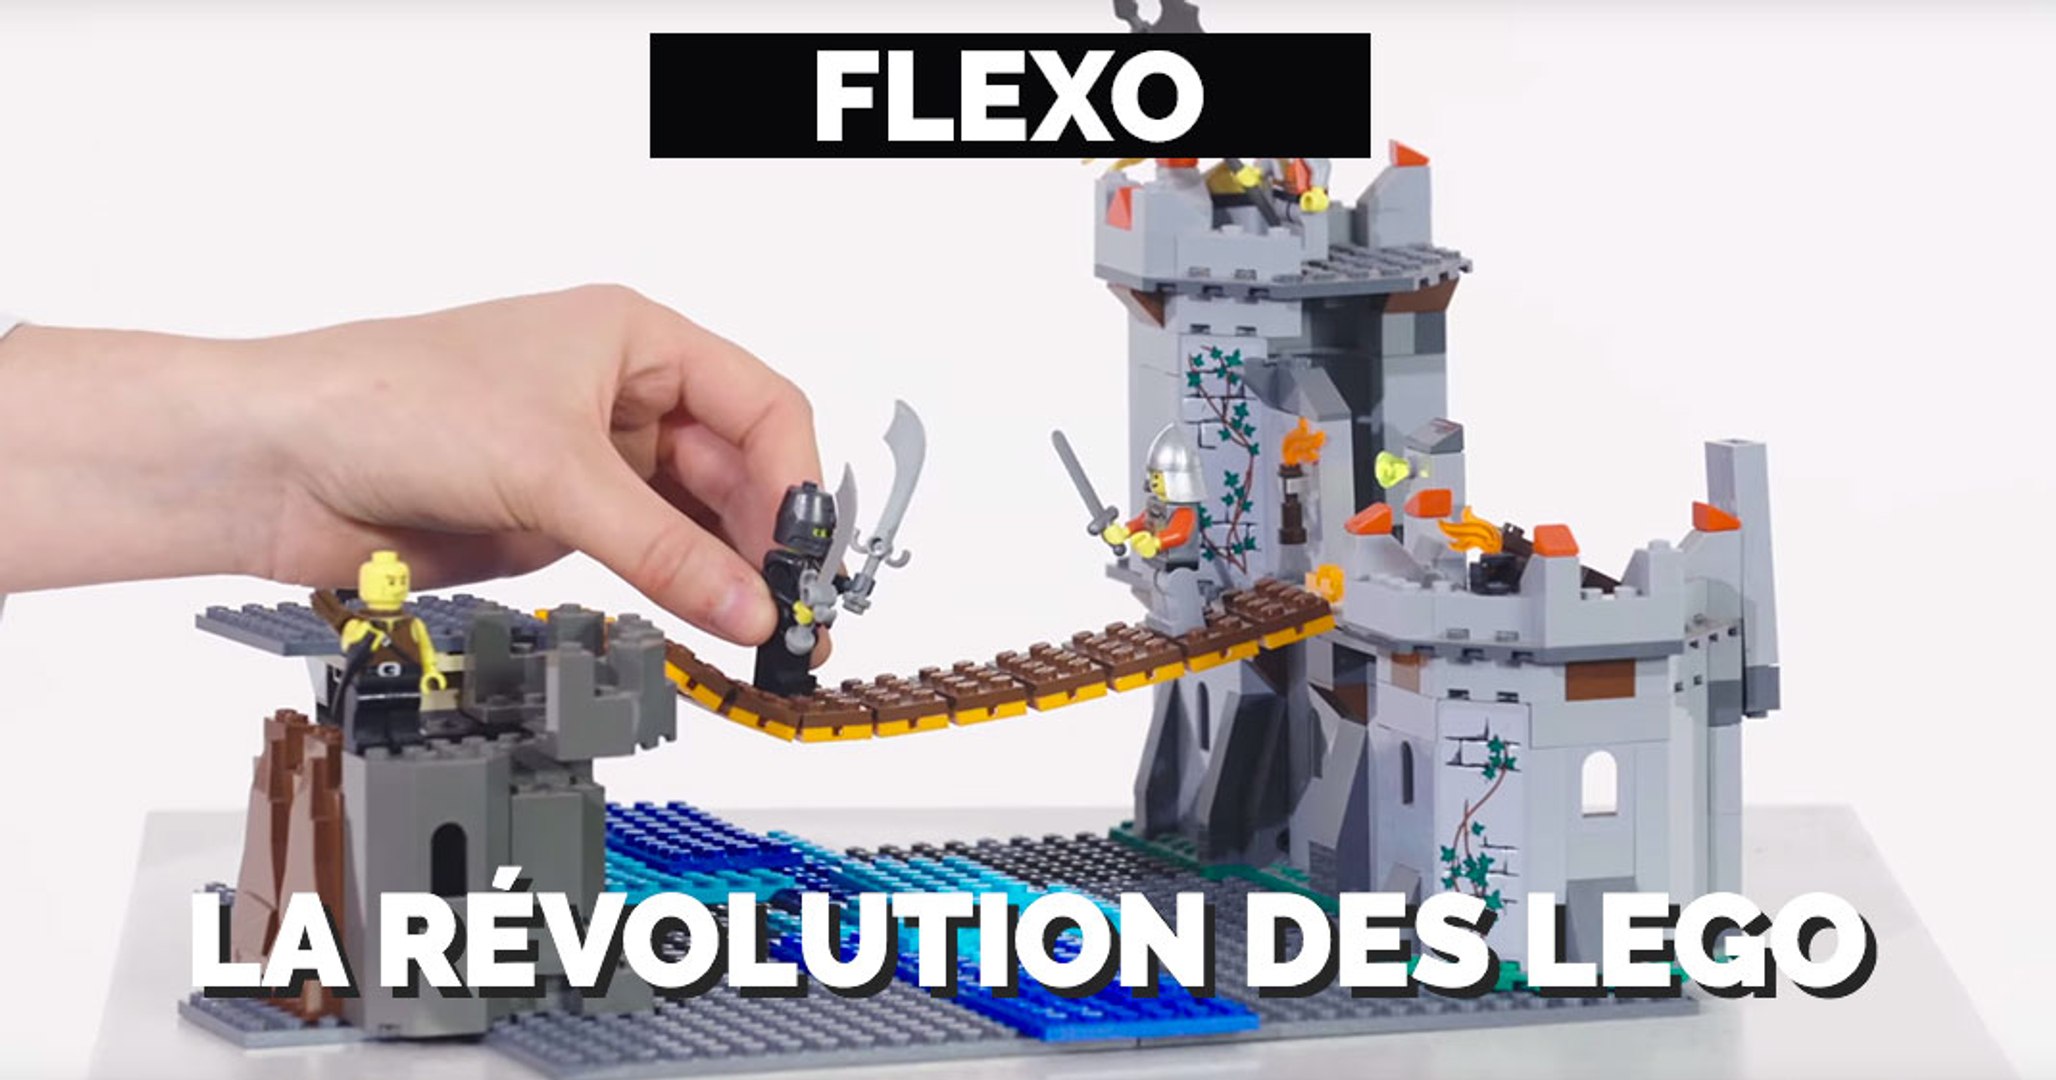 Des créations en LEGO hallucinantes grâce à Flexo ! (L'actu geek du septembre 2016) - Vidéo Dailymotion